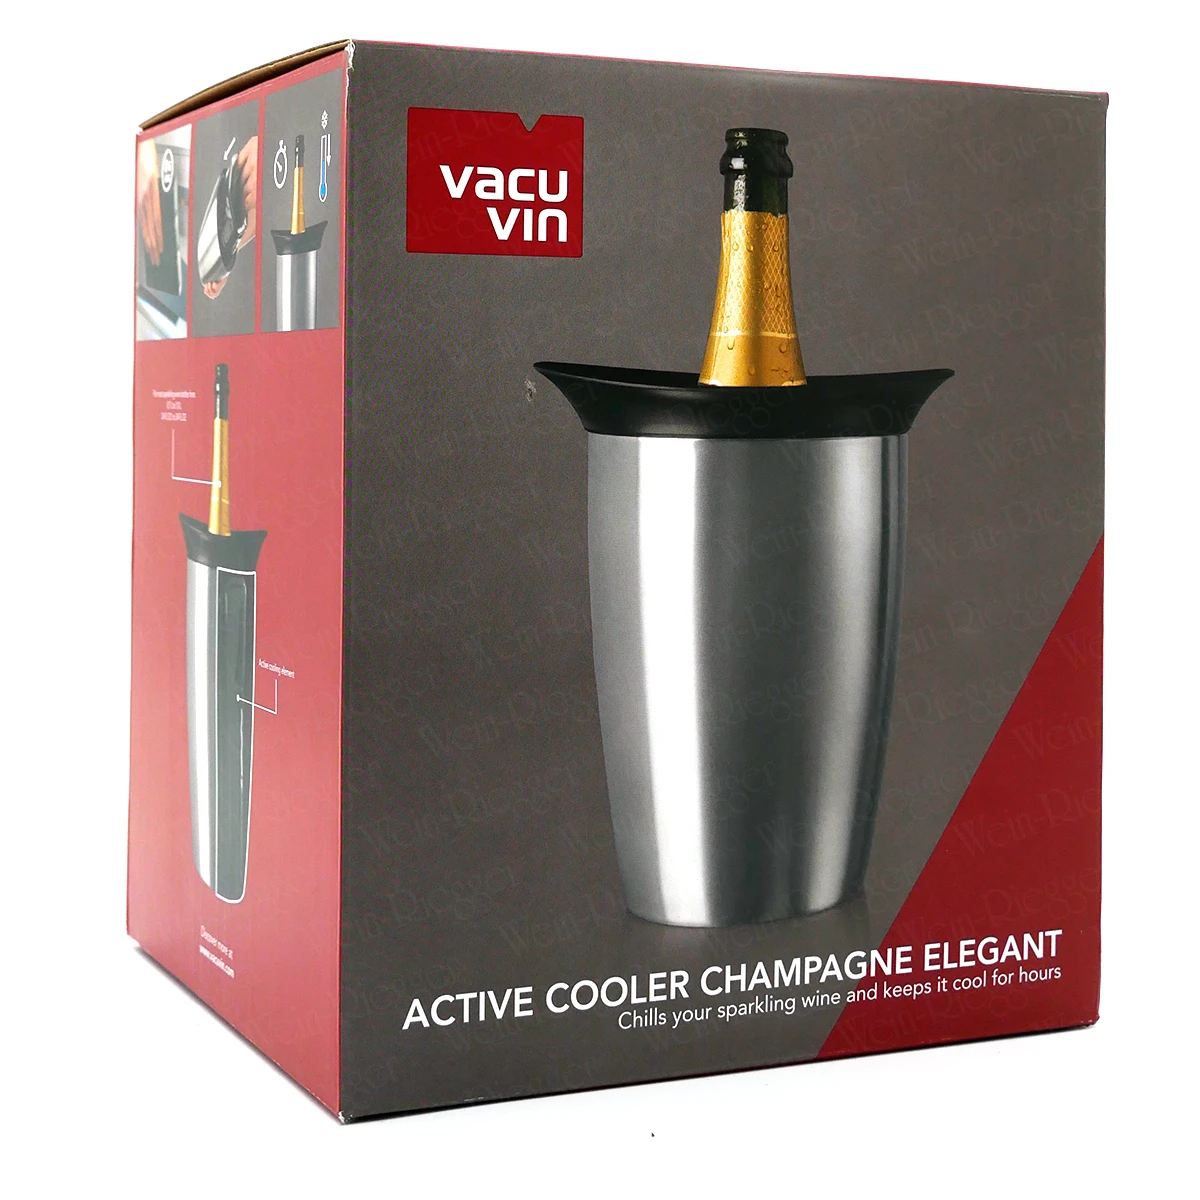 Vacu Vin | Active Cooler Champagne Elegant